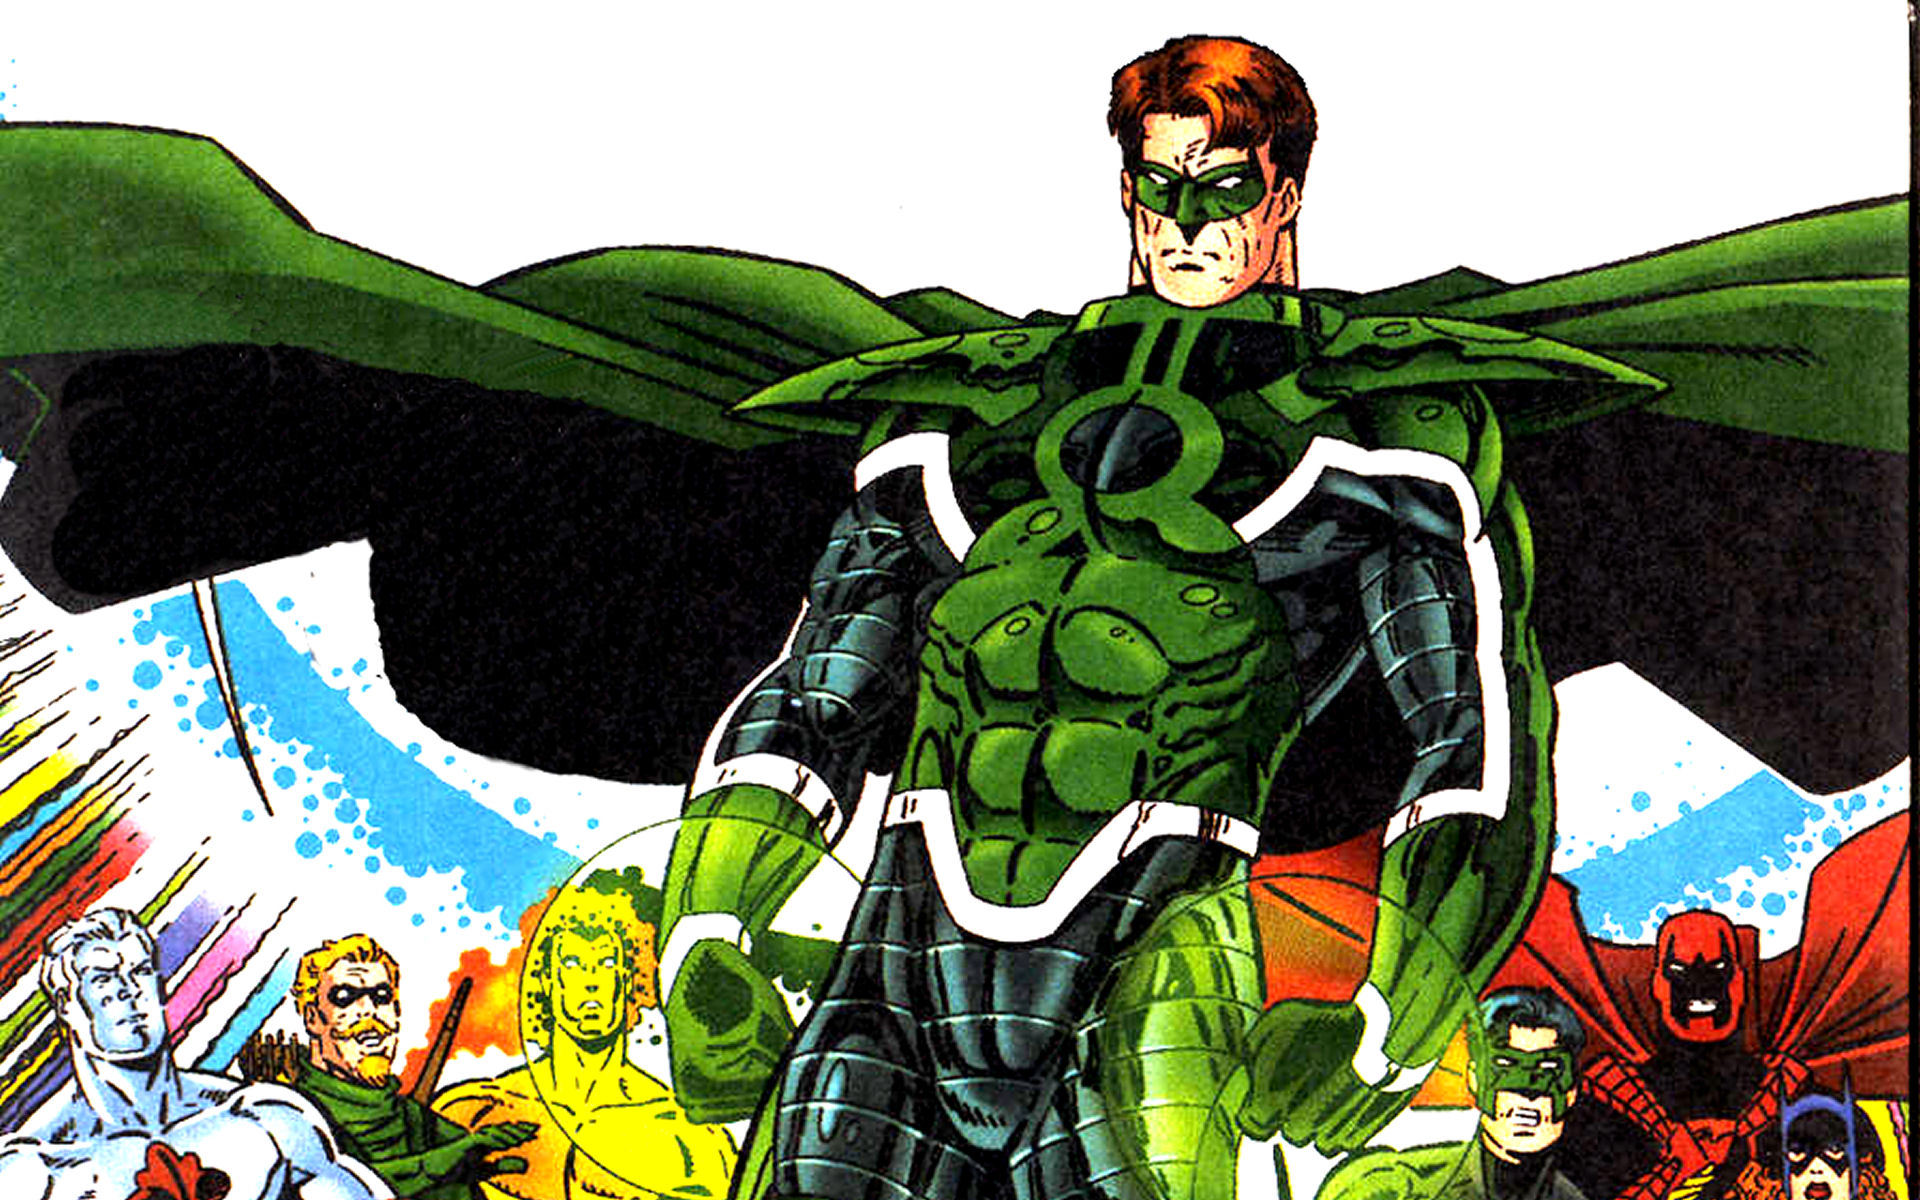 Зеленый Фонарь, DC Comics, комиксы - обои на рабочий стол